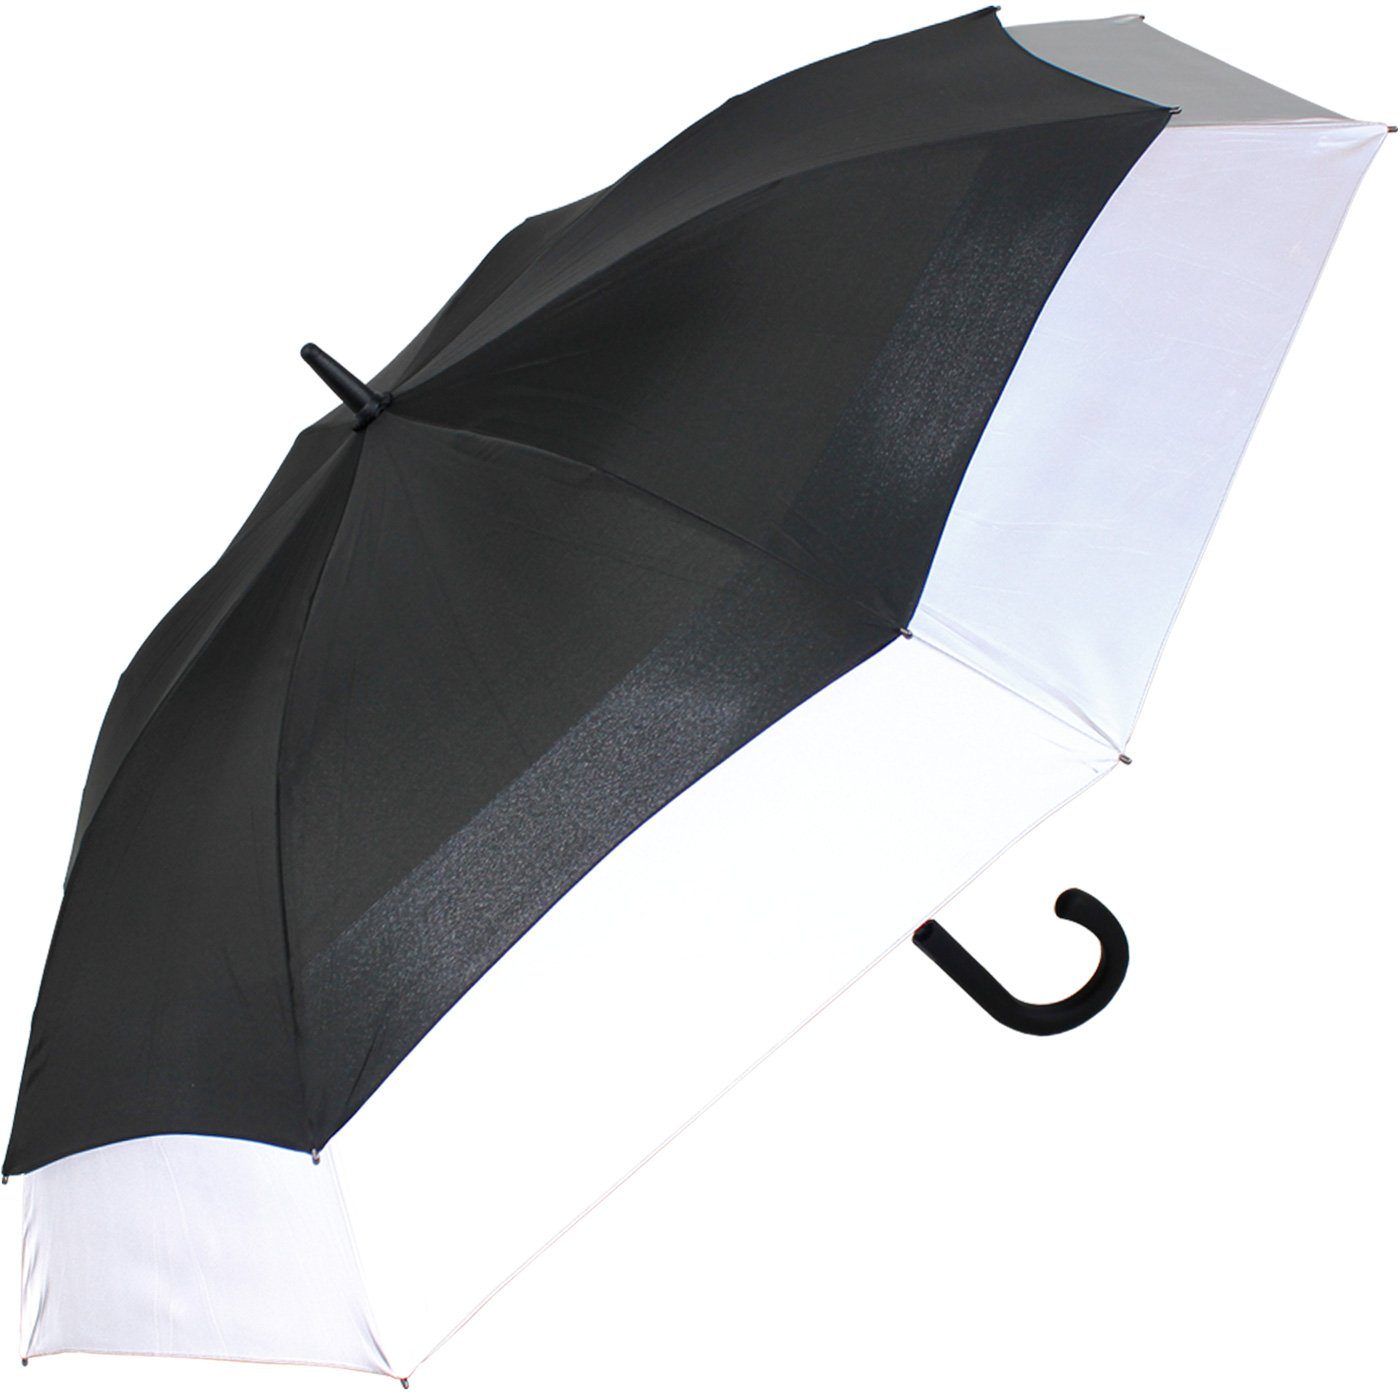 mit reflektierend Automatik, expandierender XXL to schwarz-reflektierend iX-brella Schirm - Move Langregenschirm